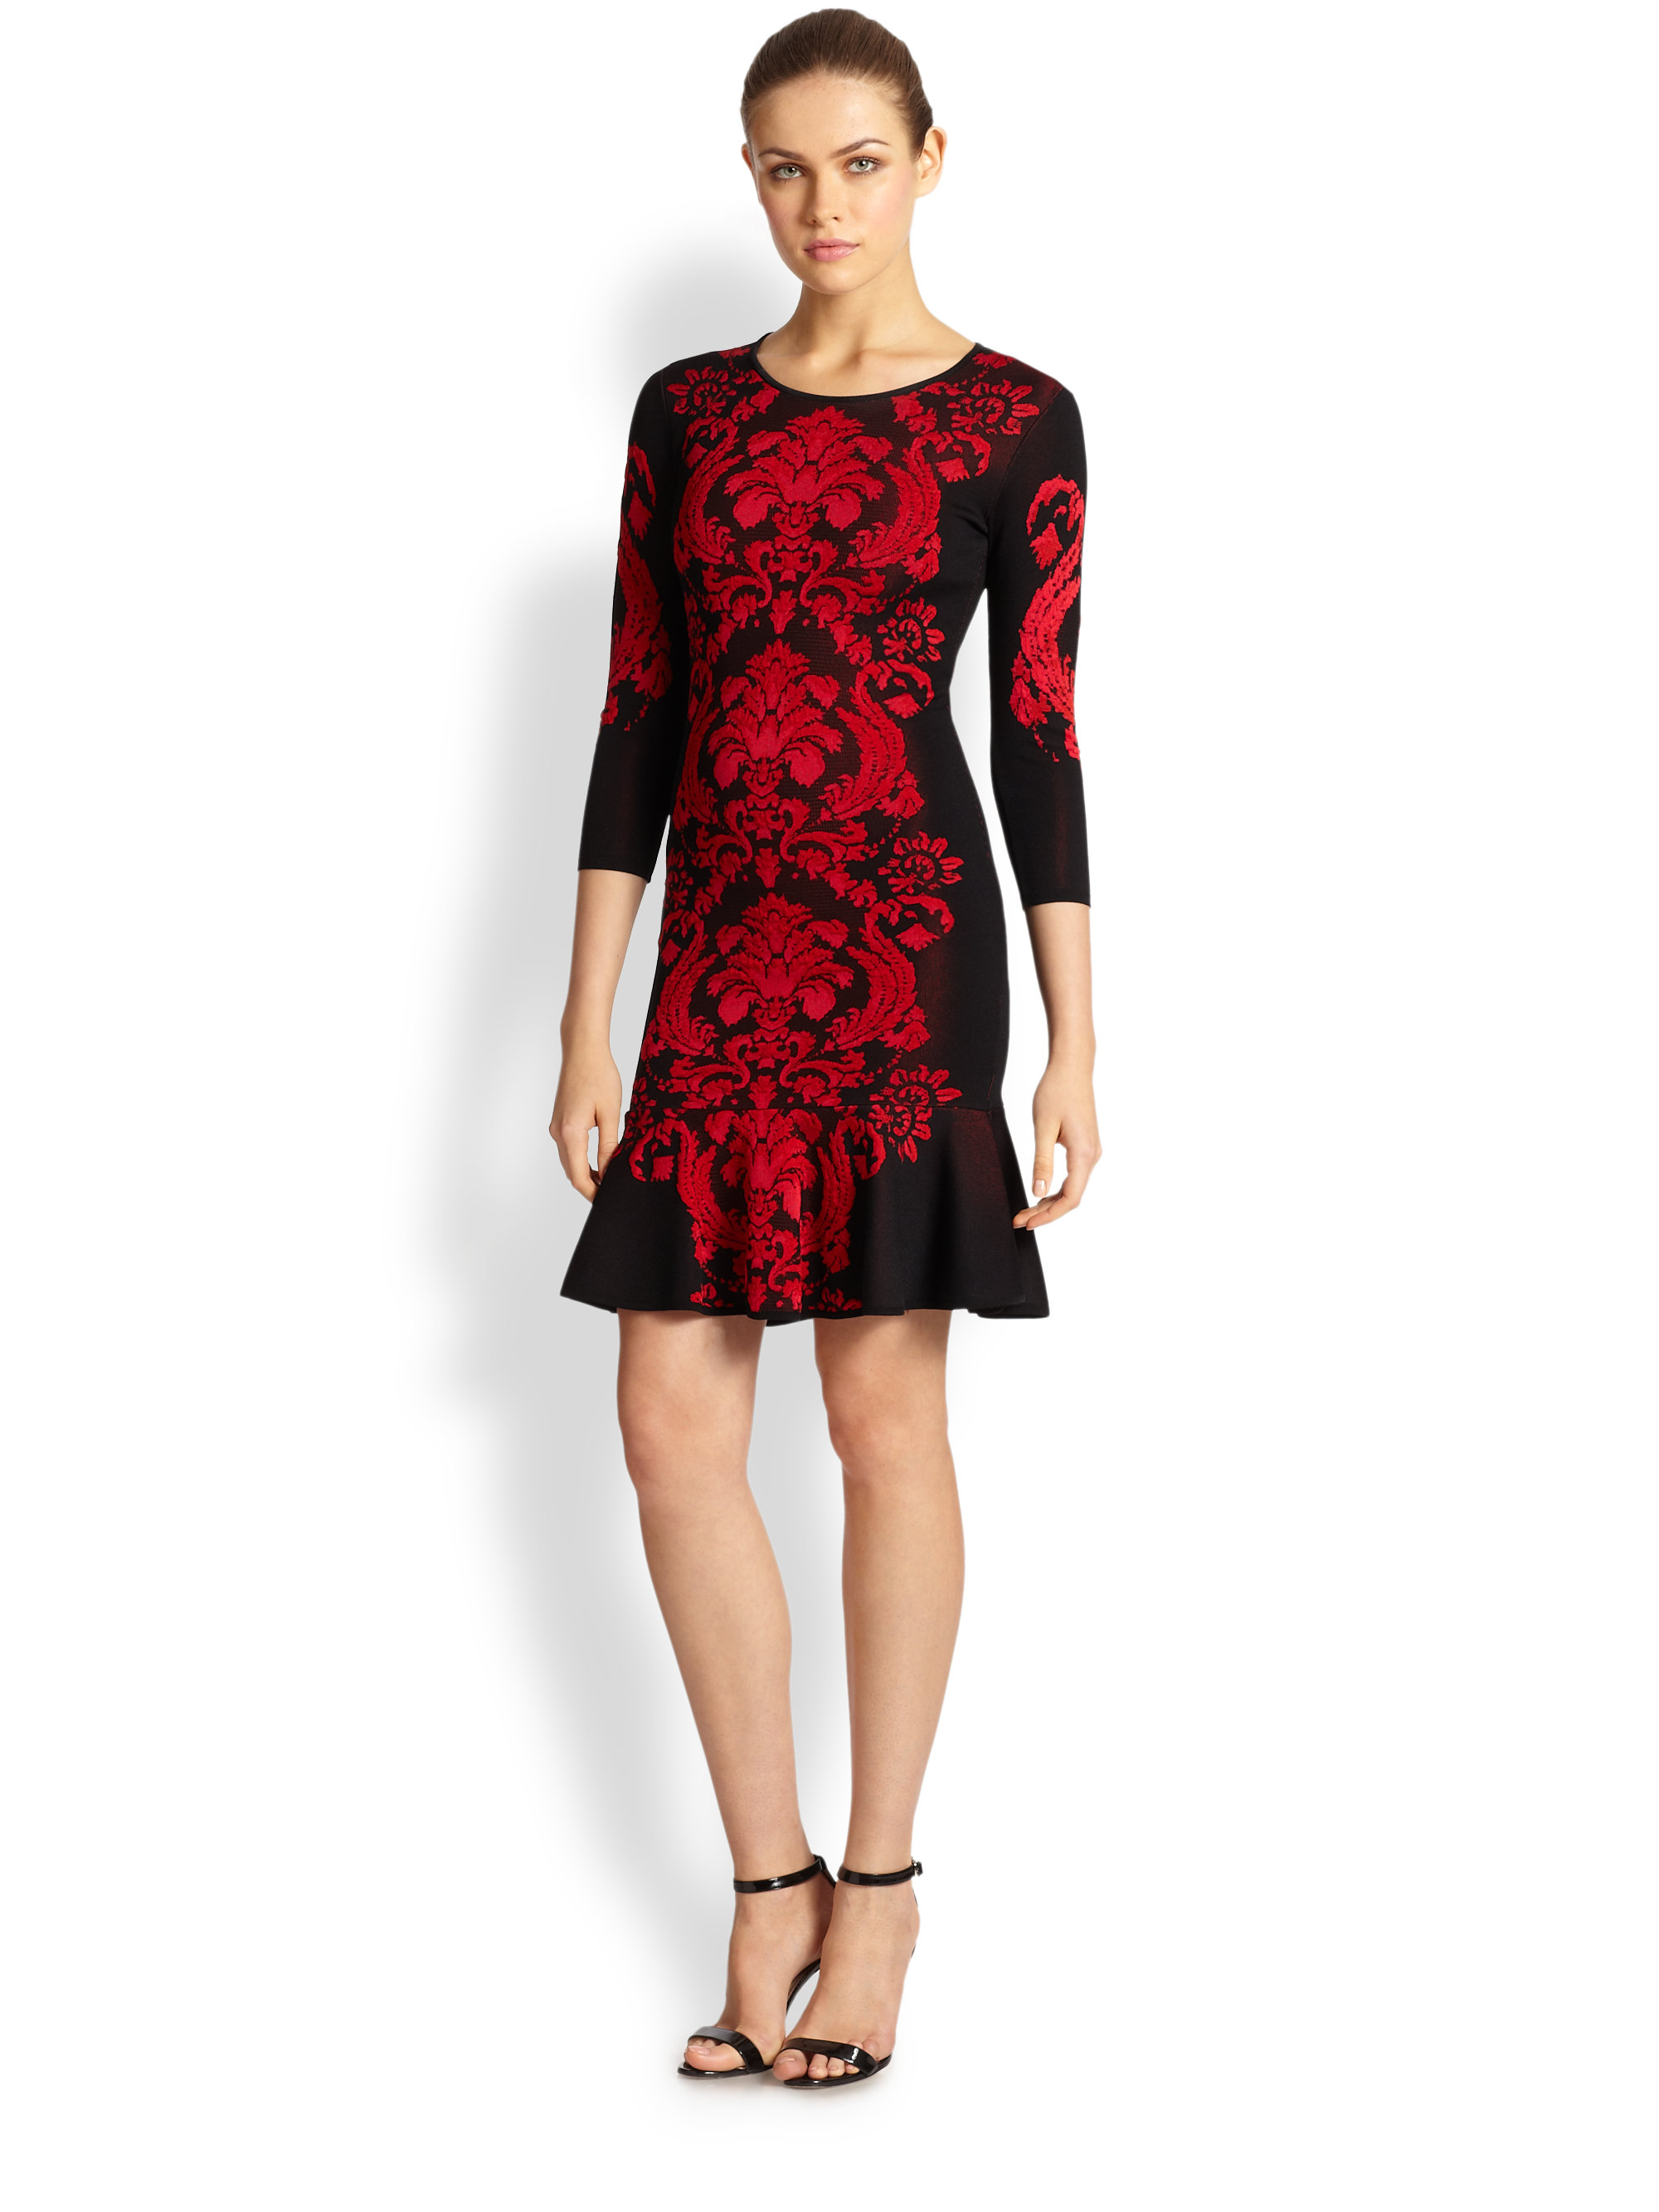 Lyst - Roberto Cavalli Jacquard Knit Dress in Red